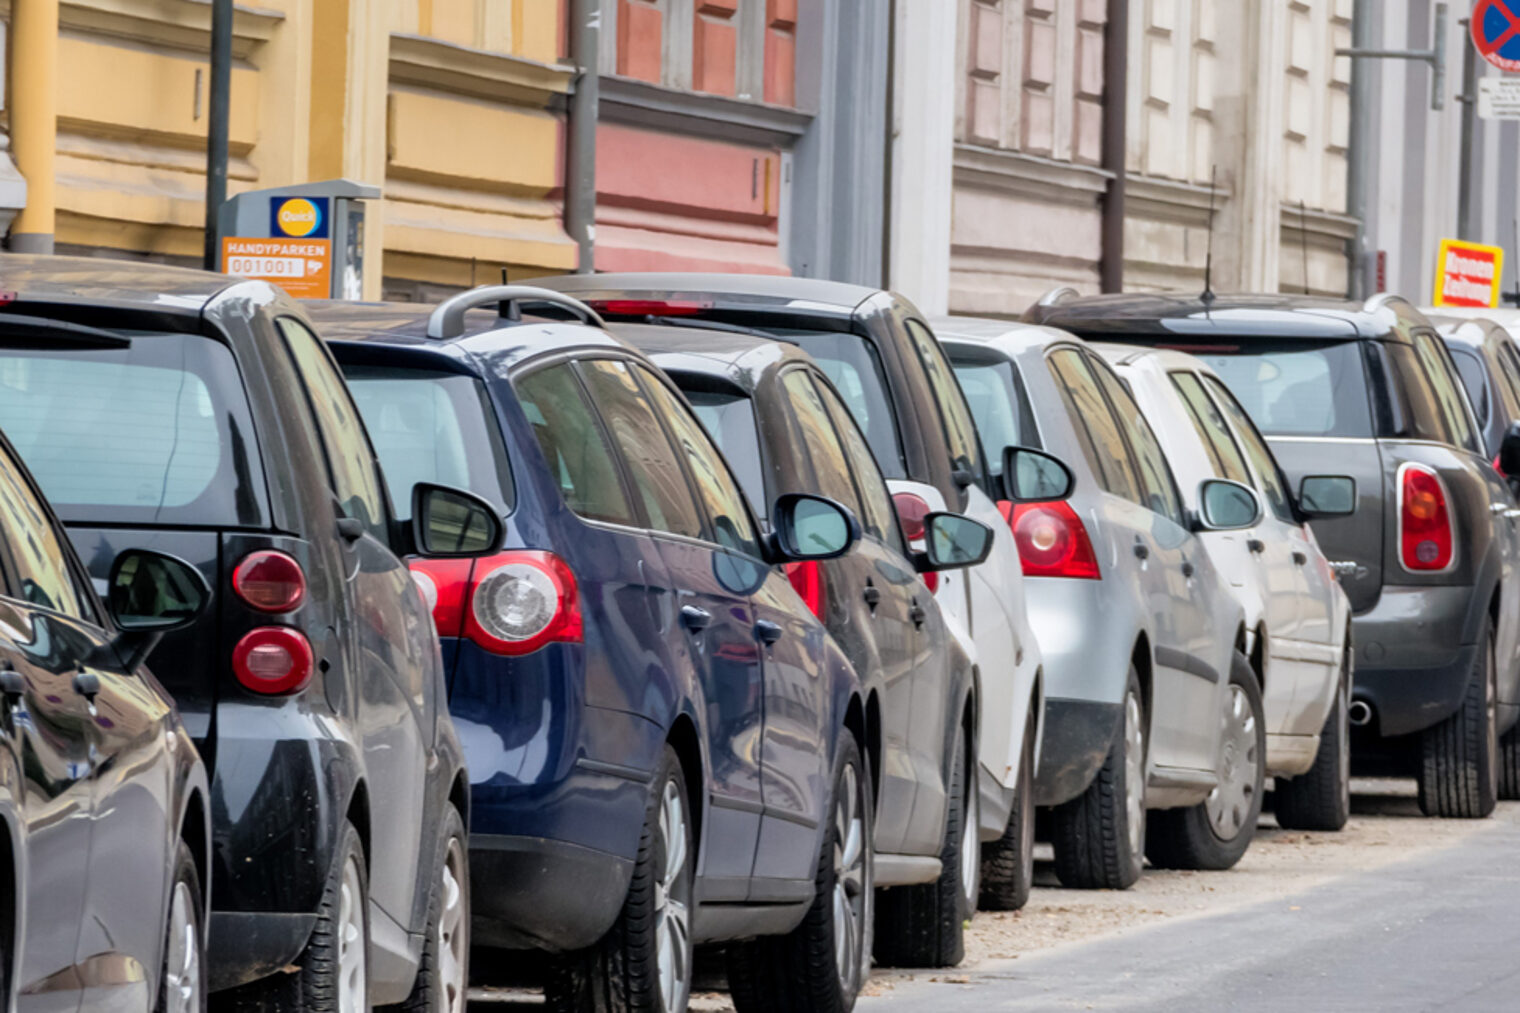 Auf Bundesebene wird auf Initiative von NRW und Hamburg derzeit über die Novellierung des Straßenverkehrsgesetzes mit den entsprechenden Verordnungen zum Parken verhandelt.